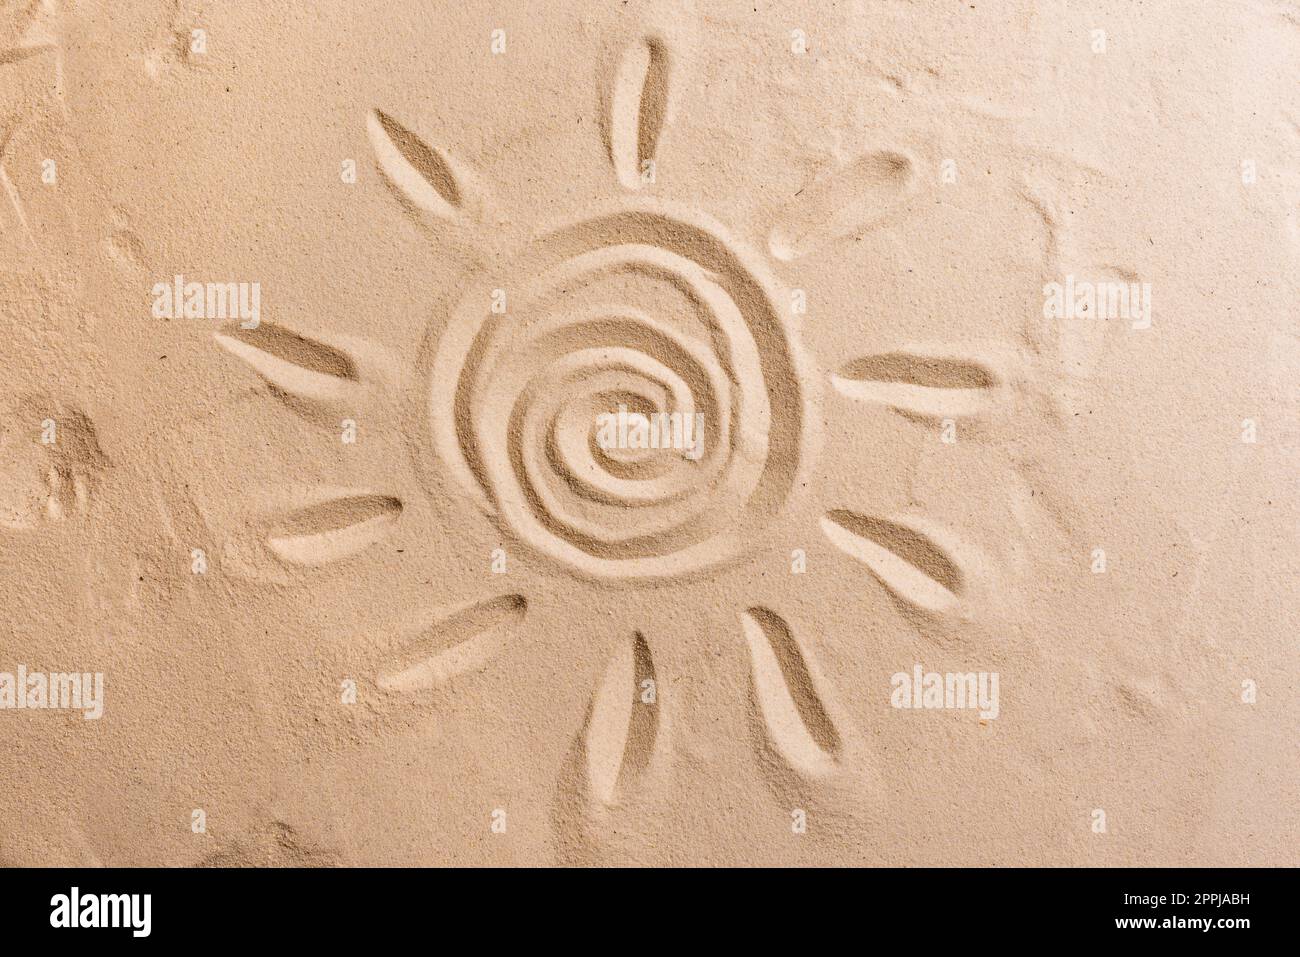 Sonnensymbol auf Sand, sandige Strandstruktur. Frohes Weihnachtskonzept. Stockfoto